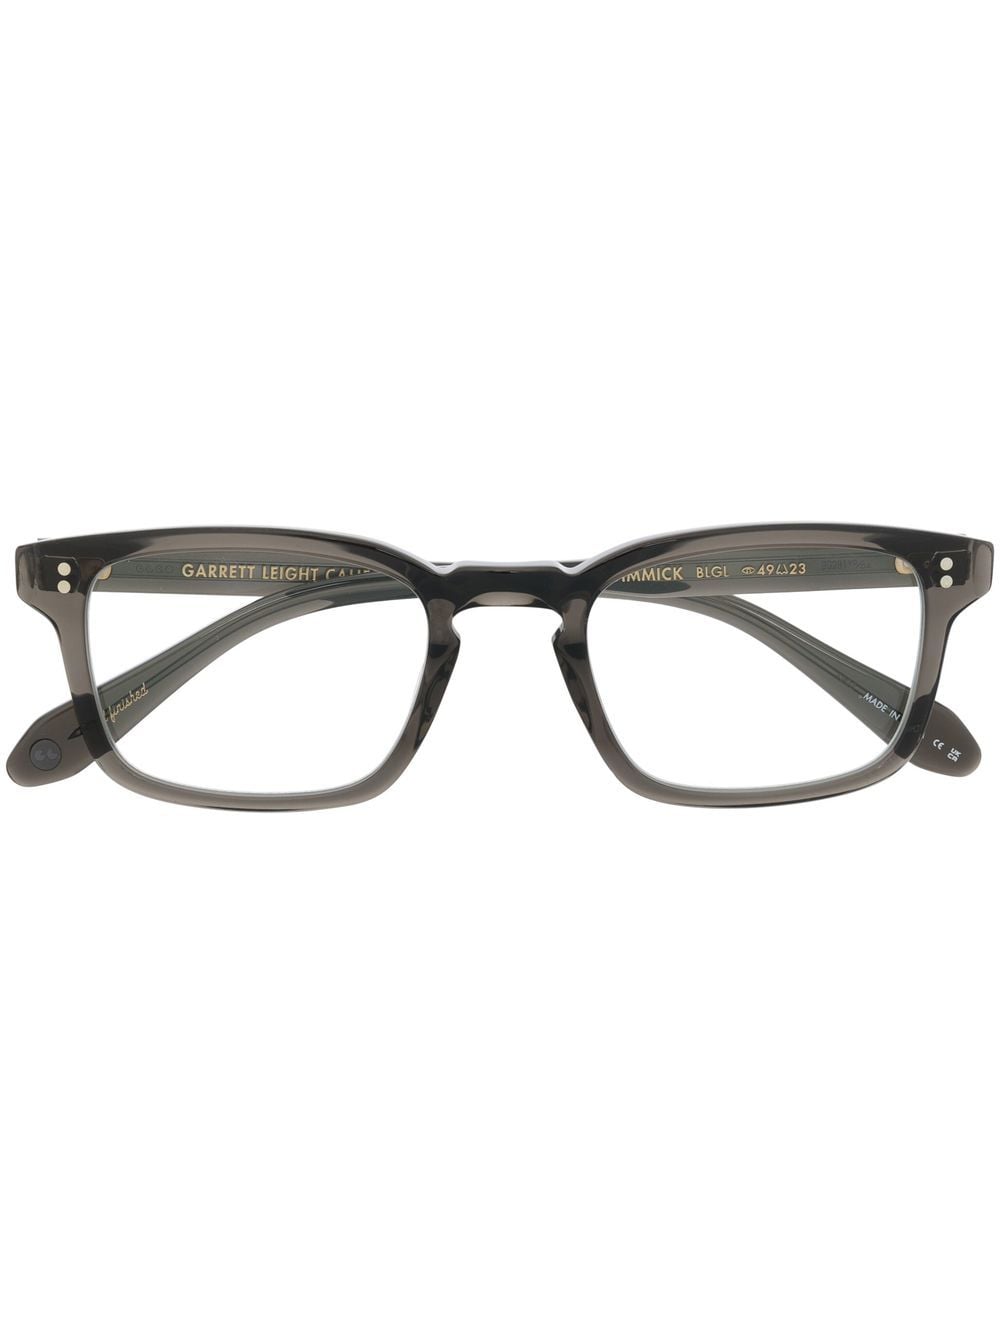 Garrett Leight Dimmick Rectangular-frame Glasses